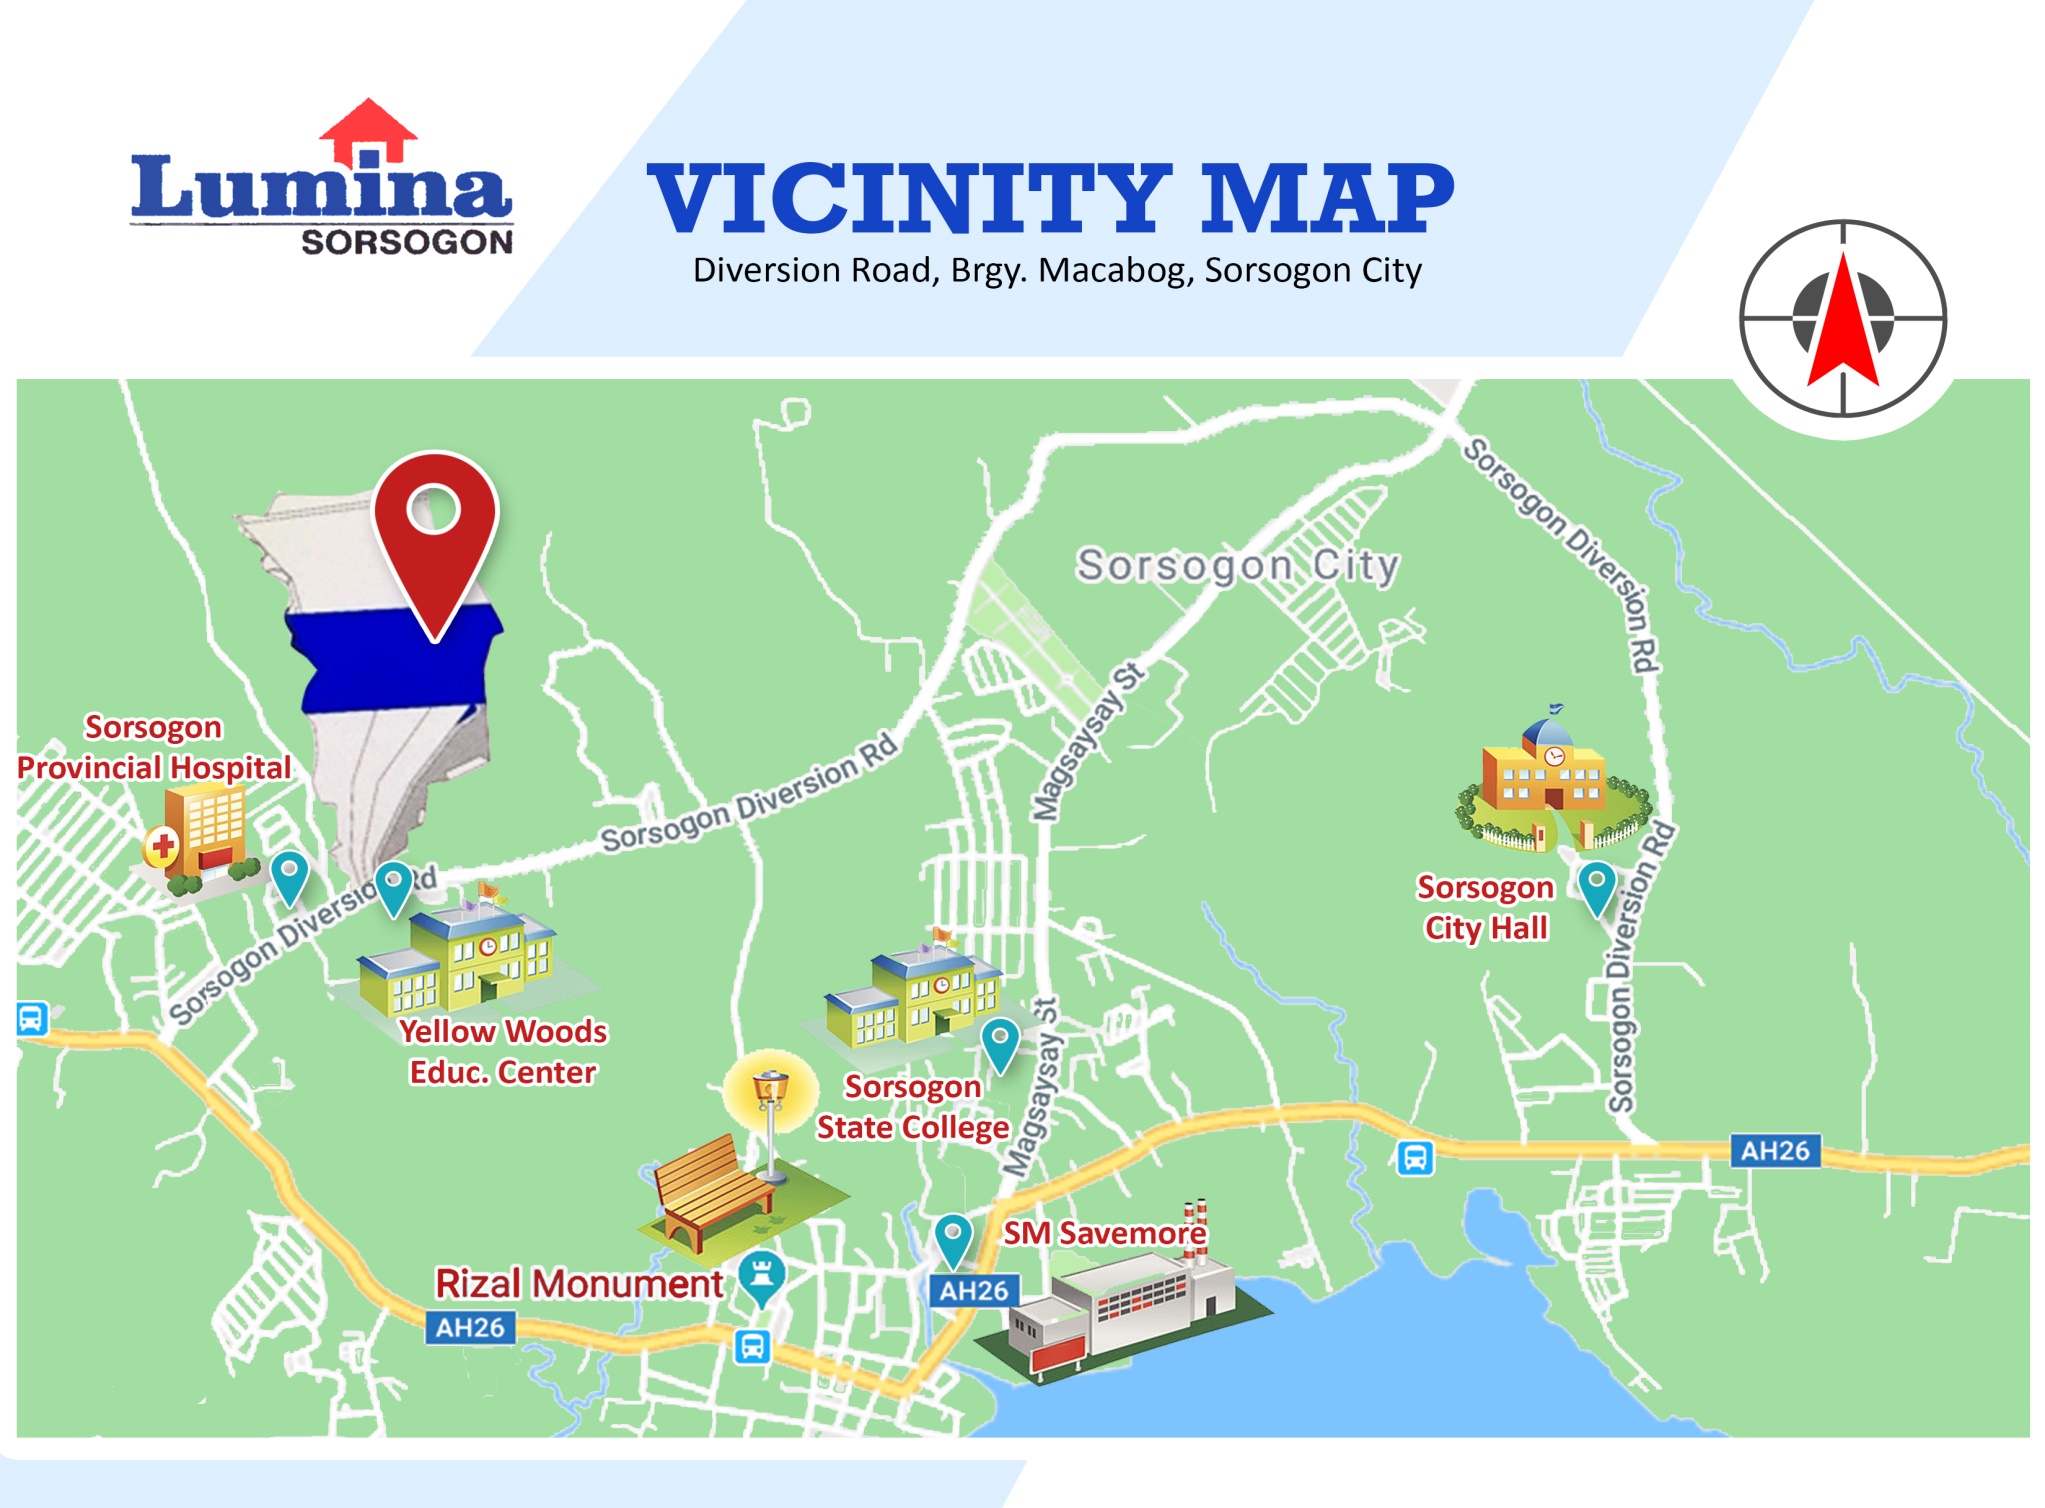 Vicinity-Map-1636442039.jpeg